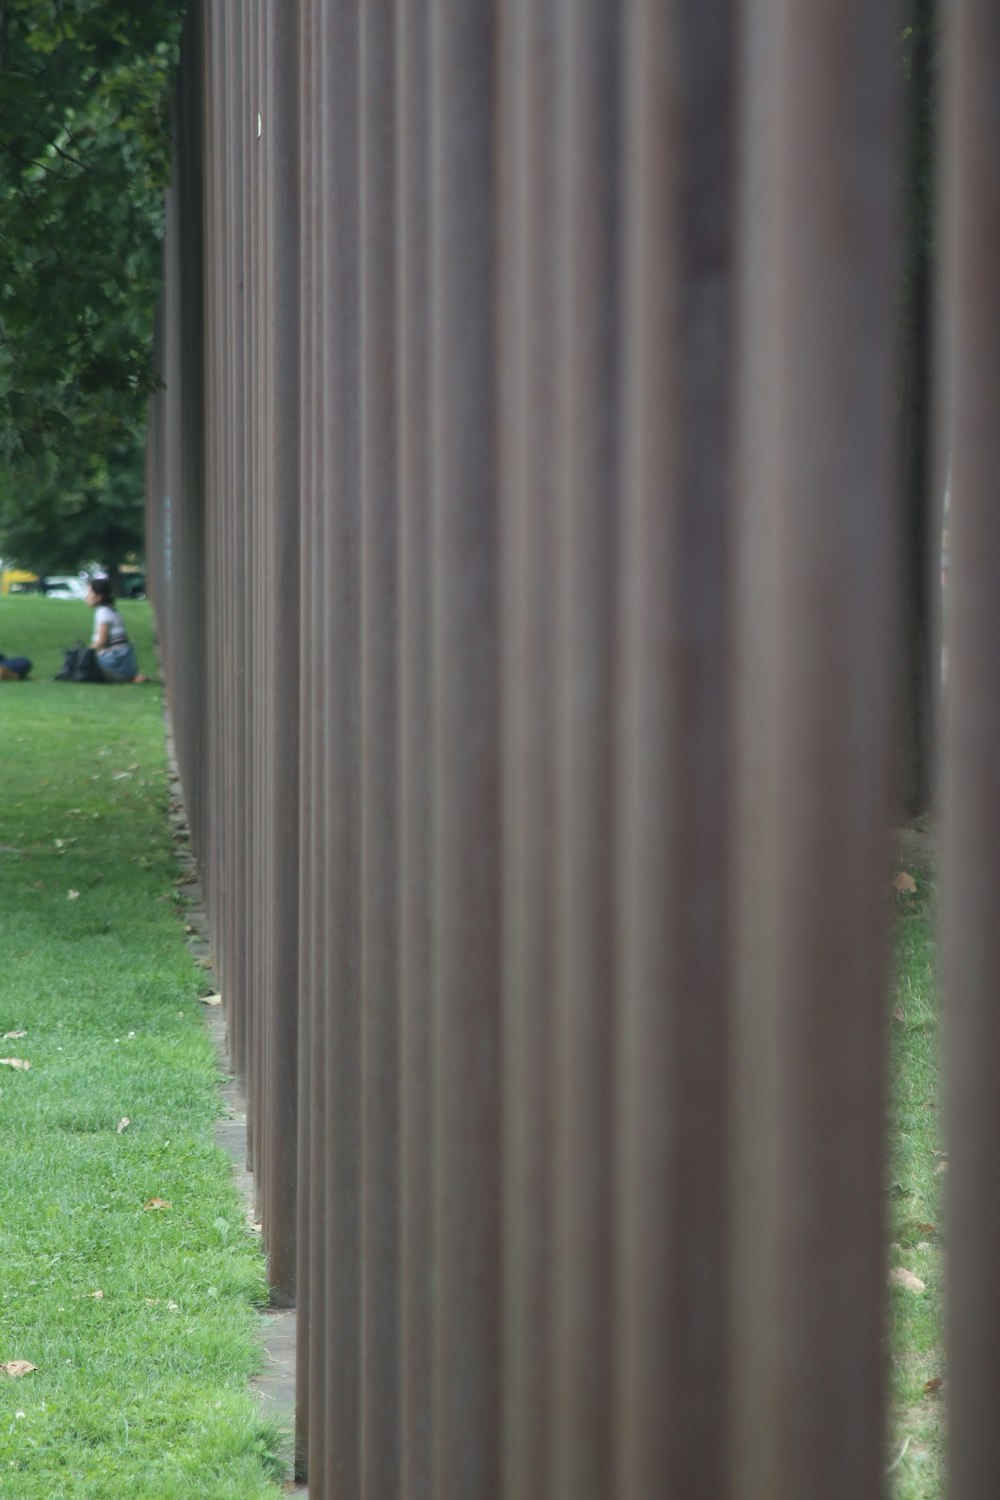 uma pessoa sentada em um banco em um parque